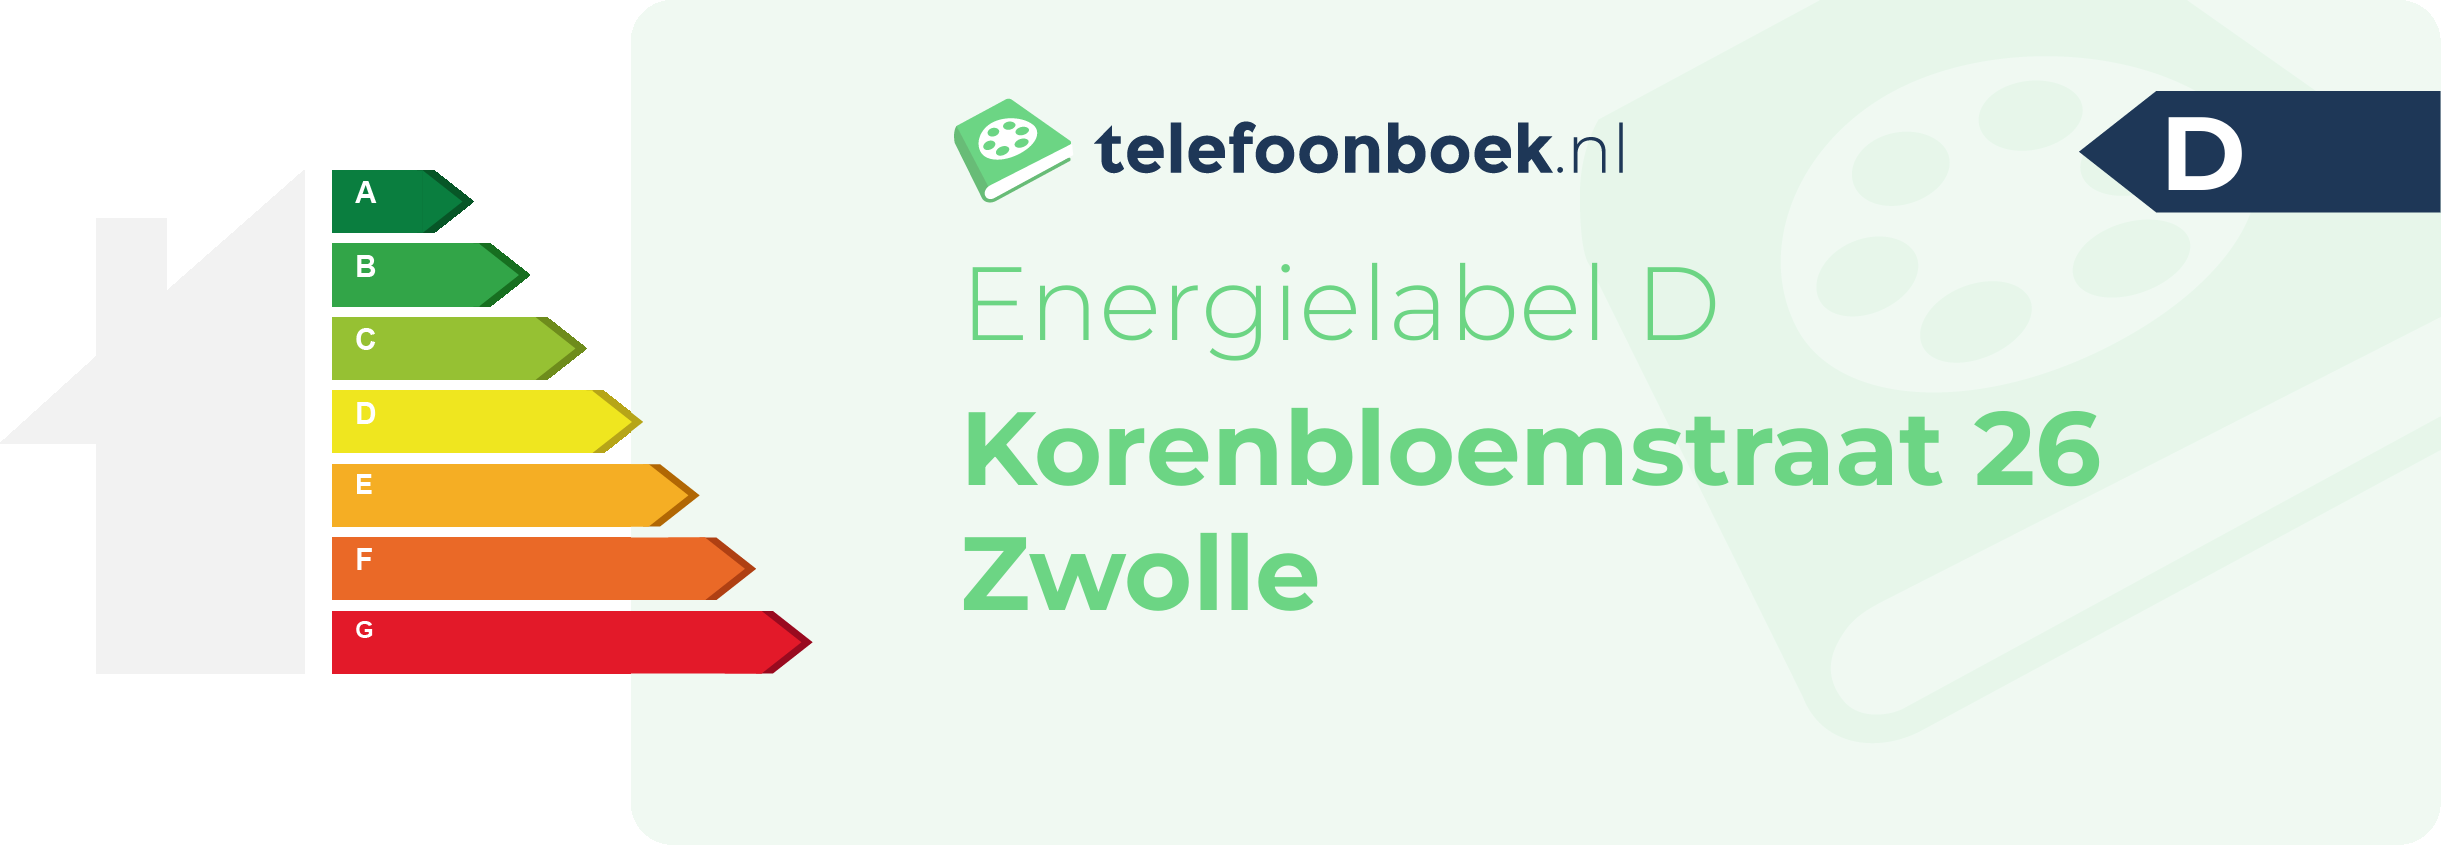 Energielabel Korenbloemstraat 26 Zwolle